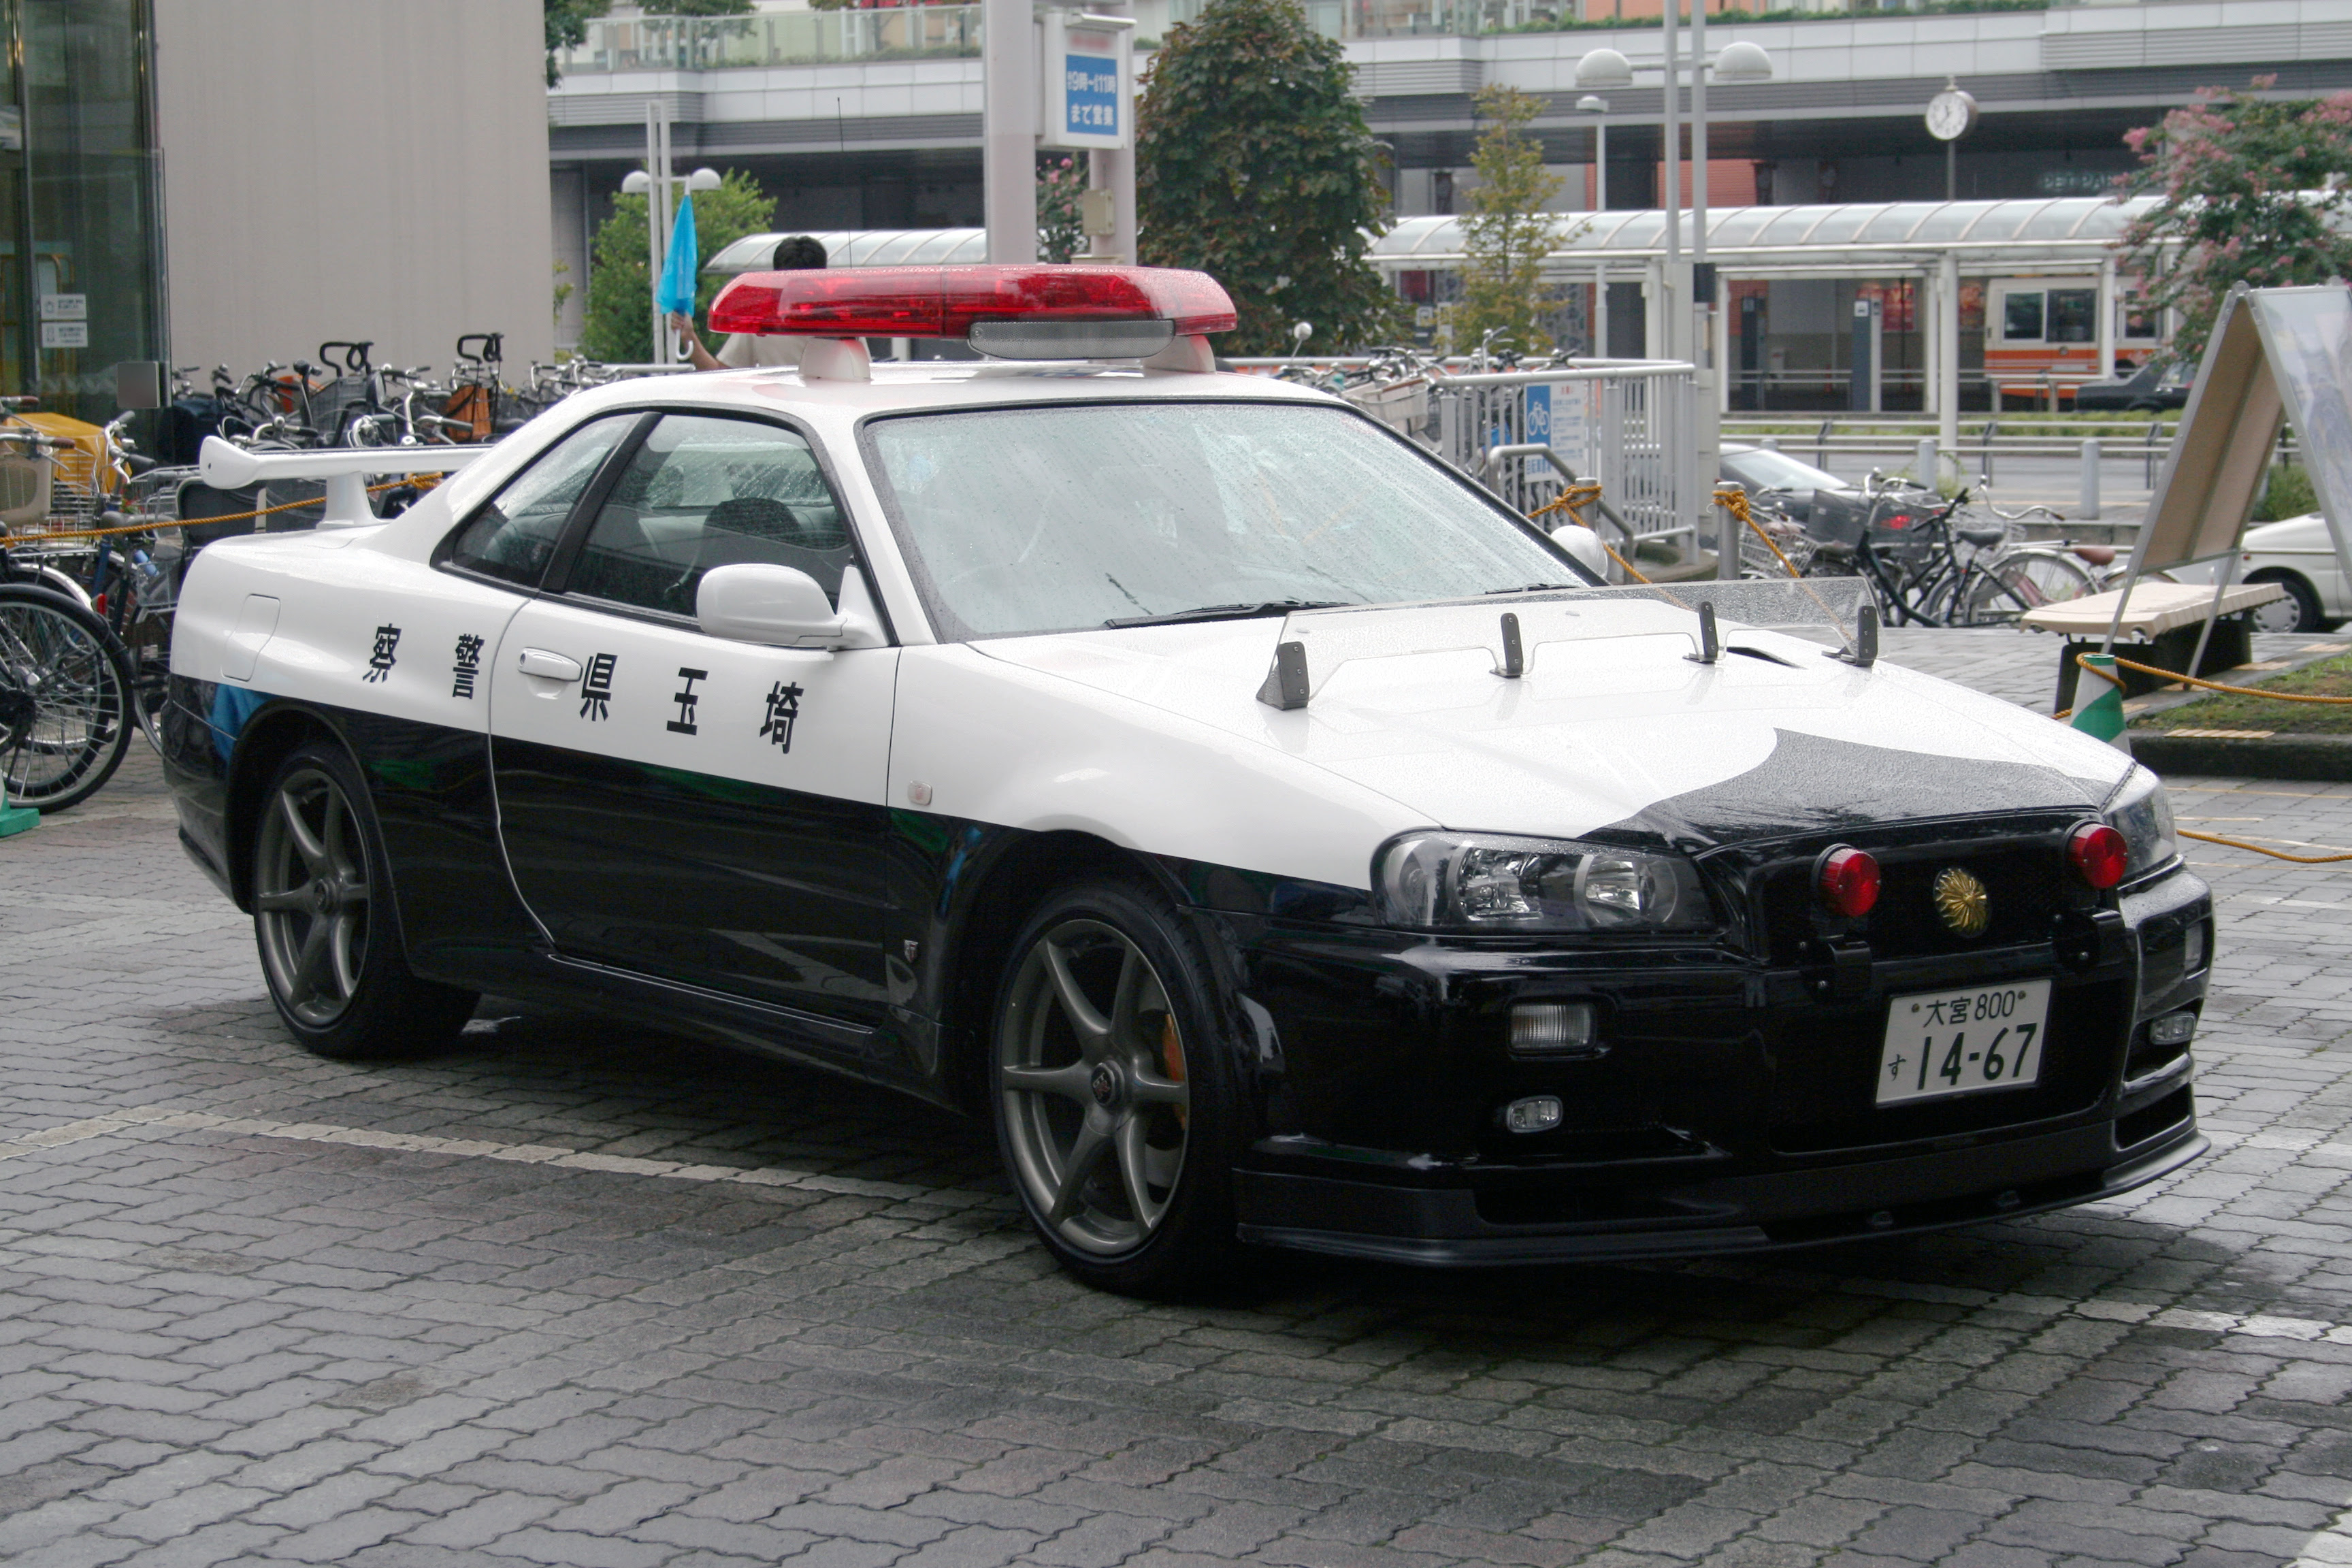 japanese Police Car